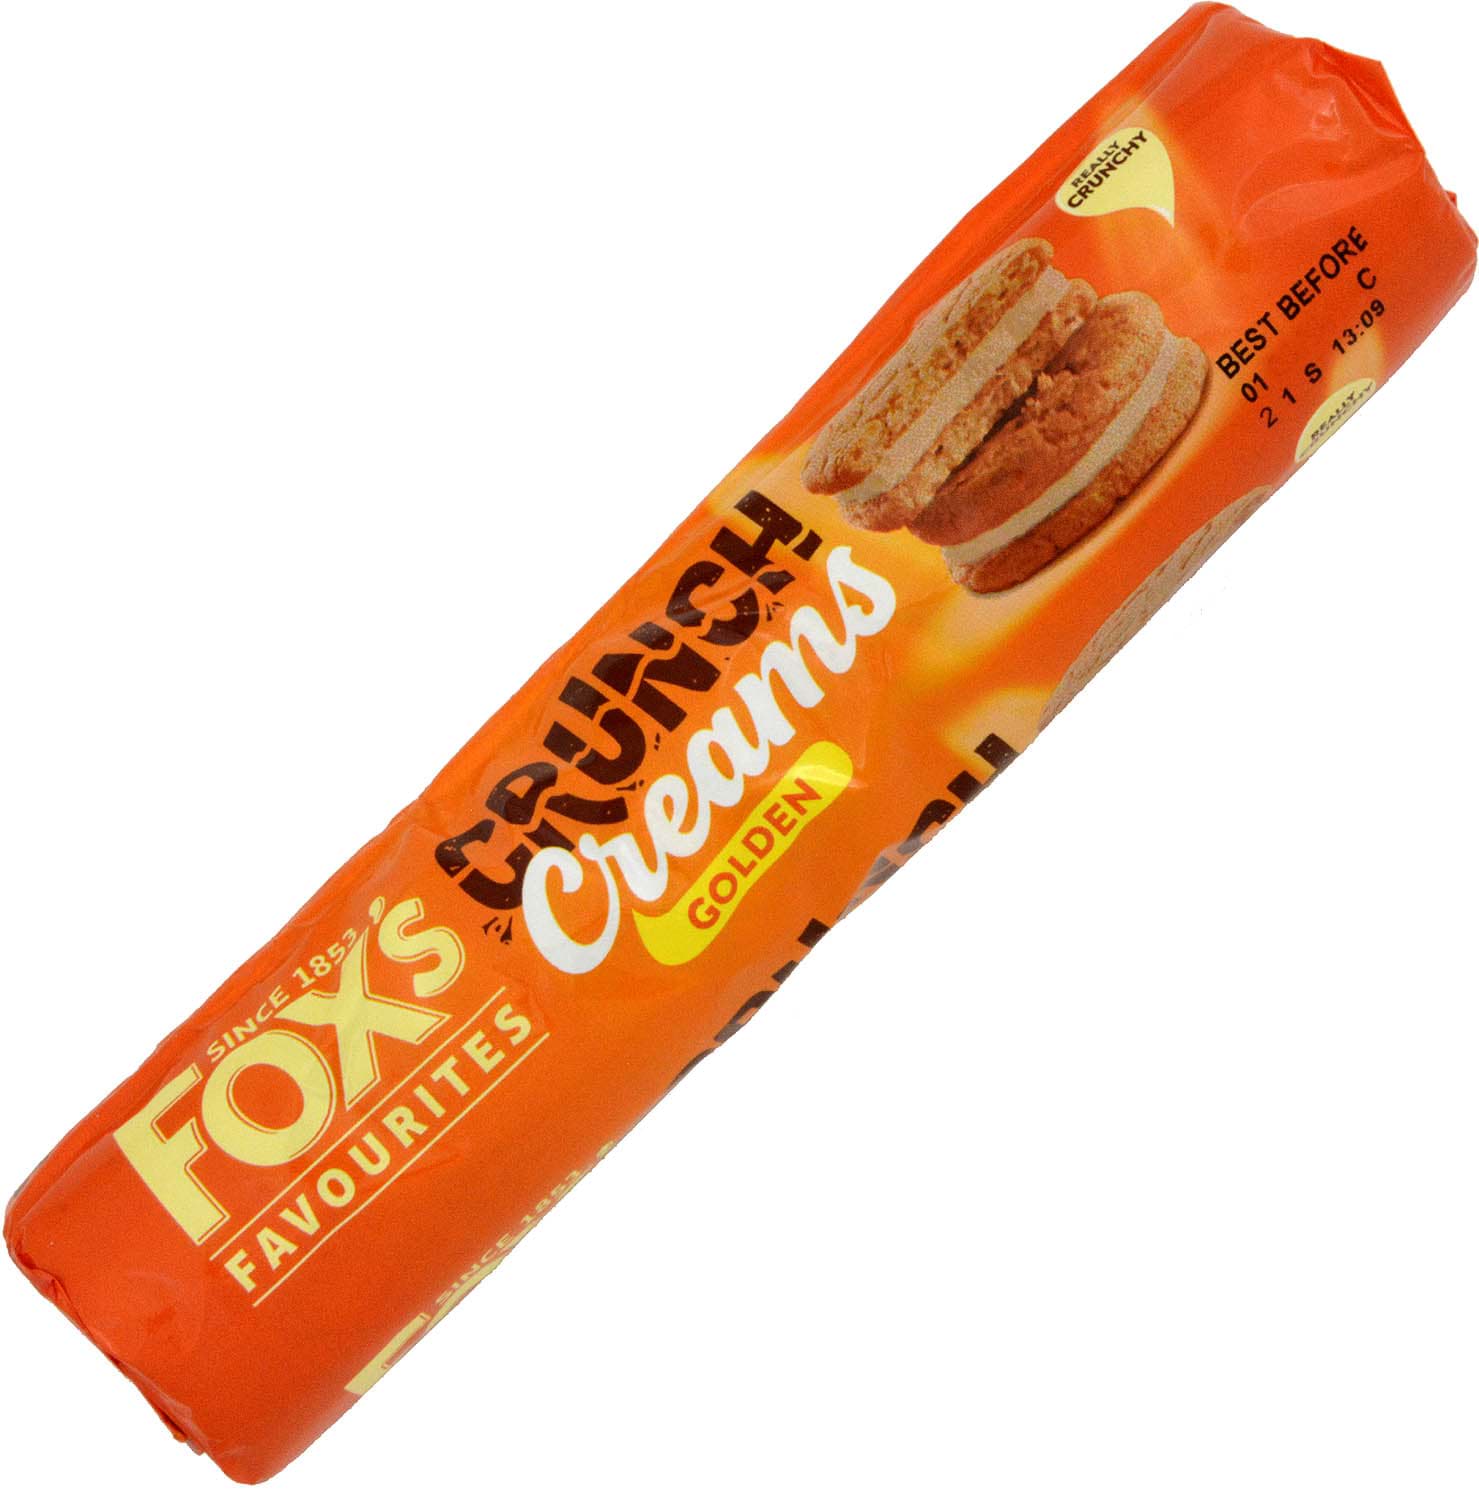 Foxs Crunch Creams 200g